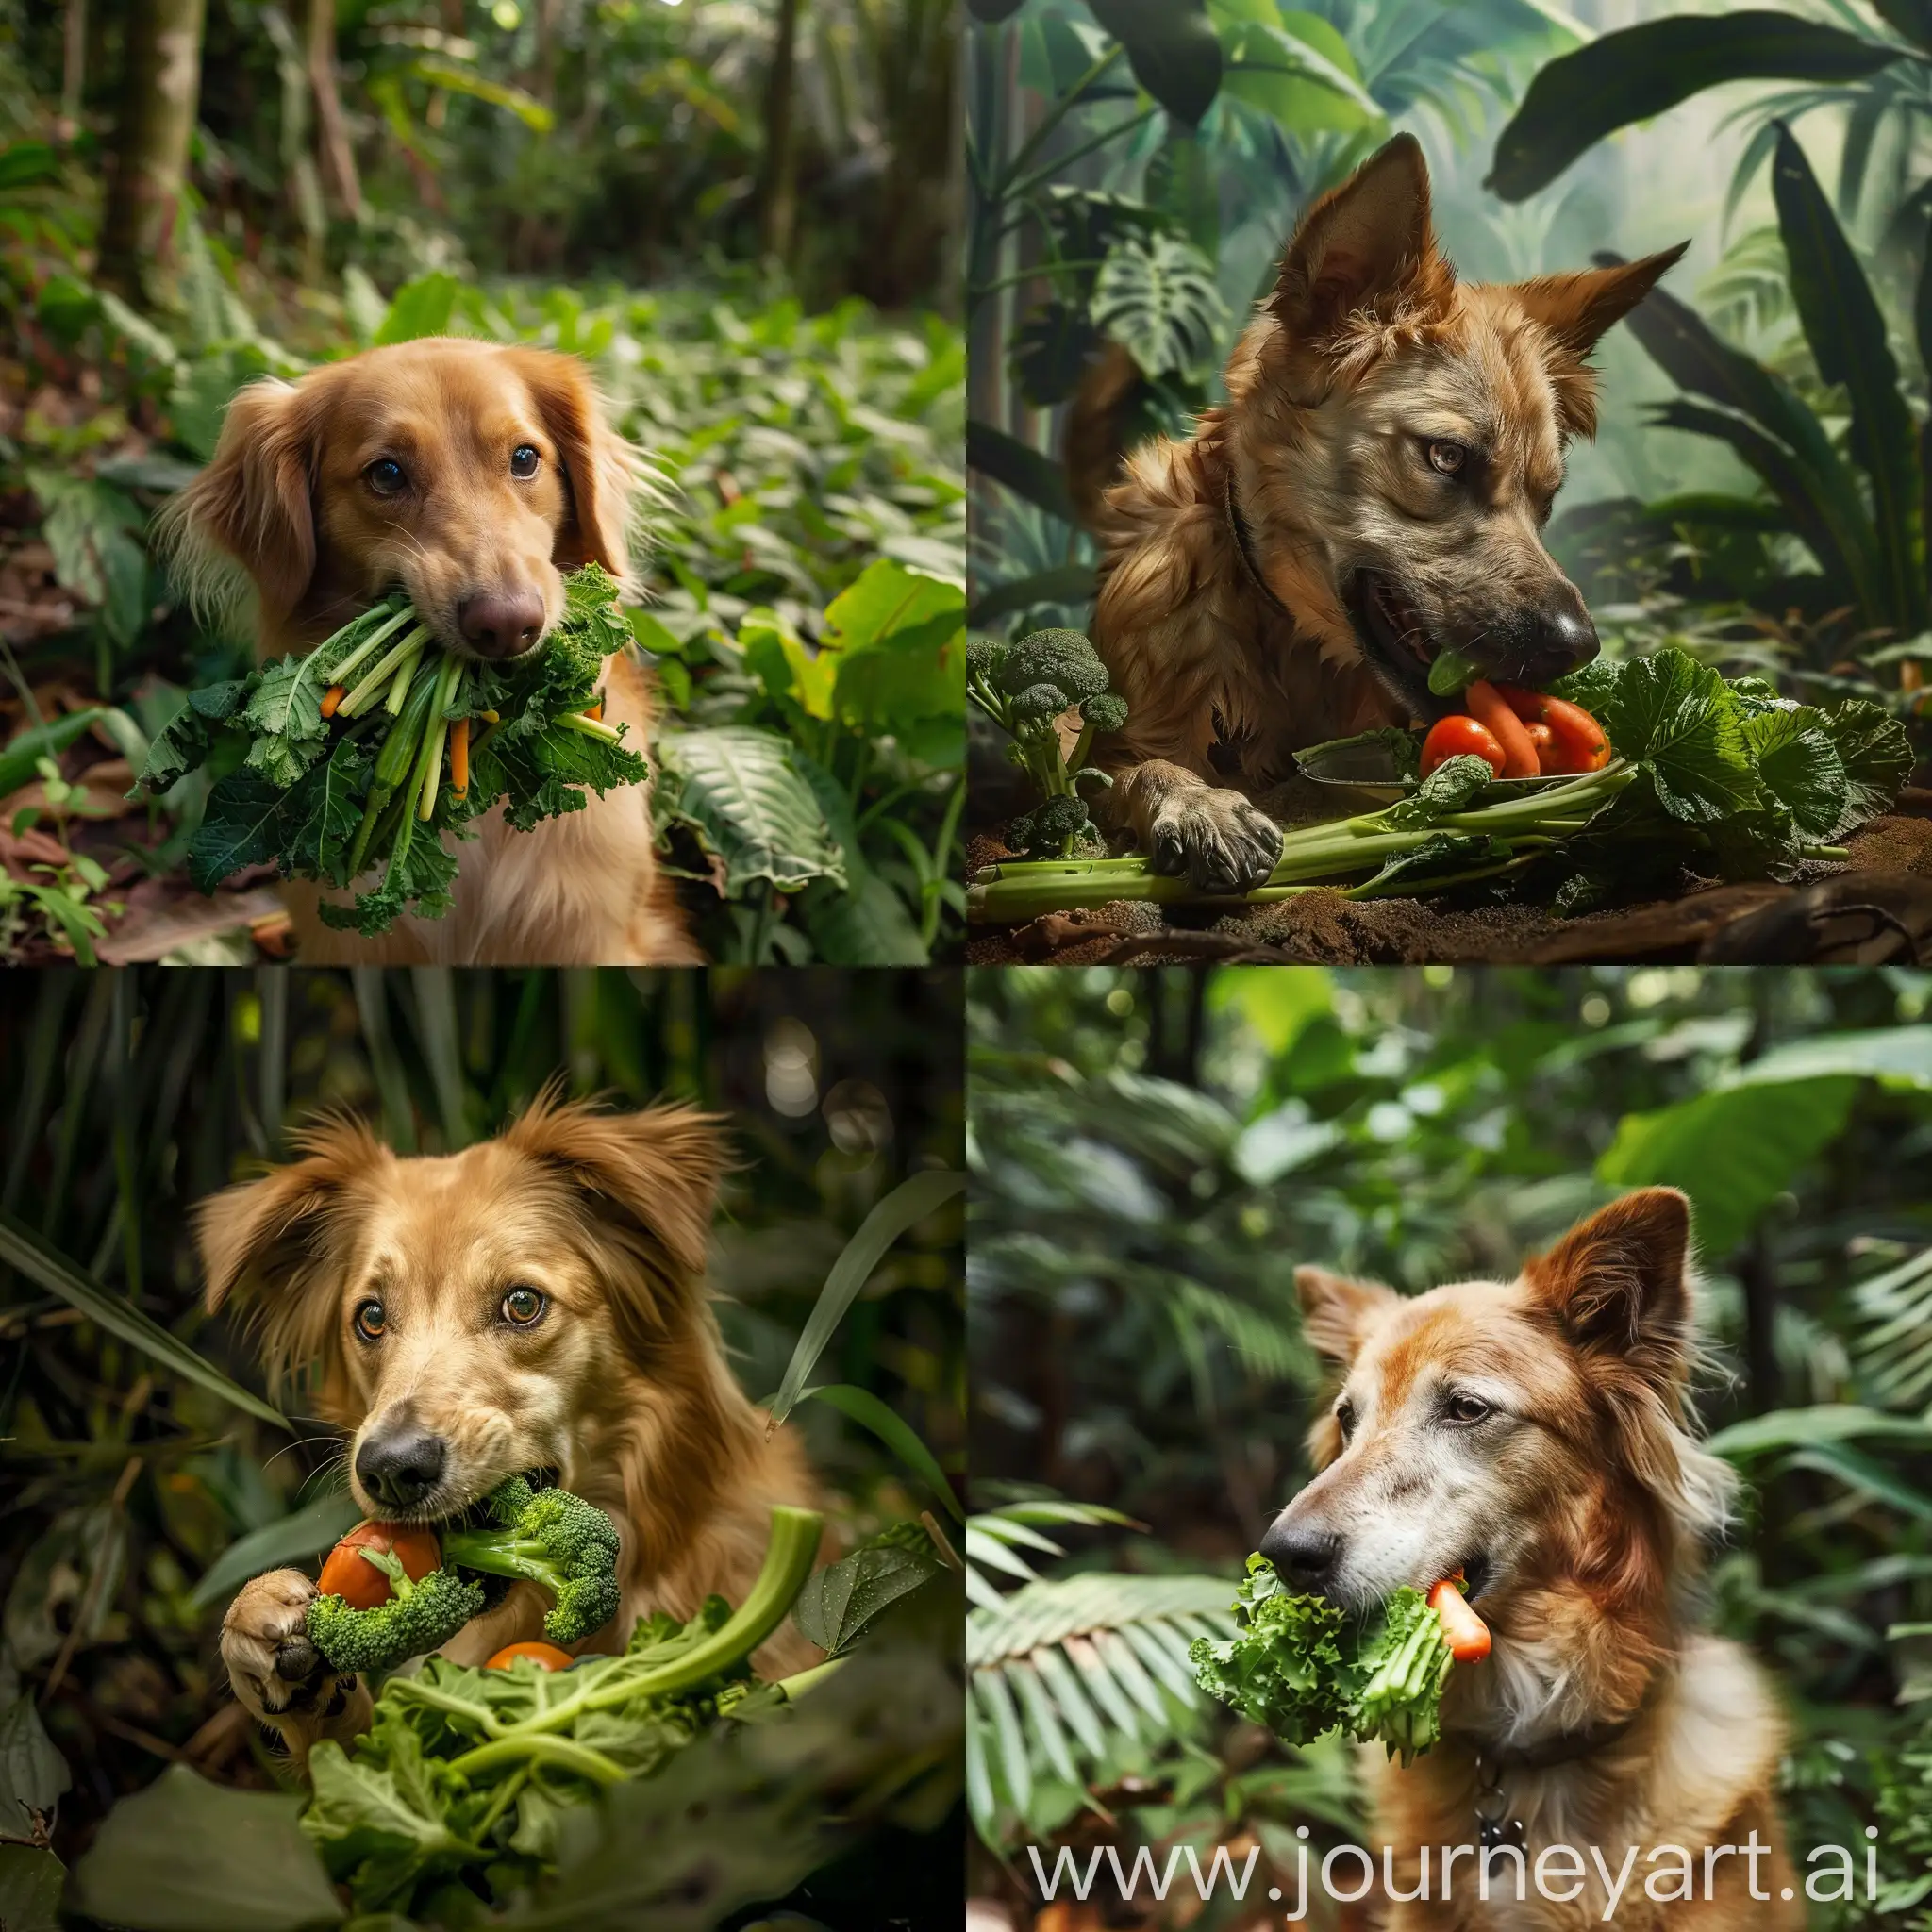  یک سگ درحال خوردن سبزی و در جنگل